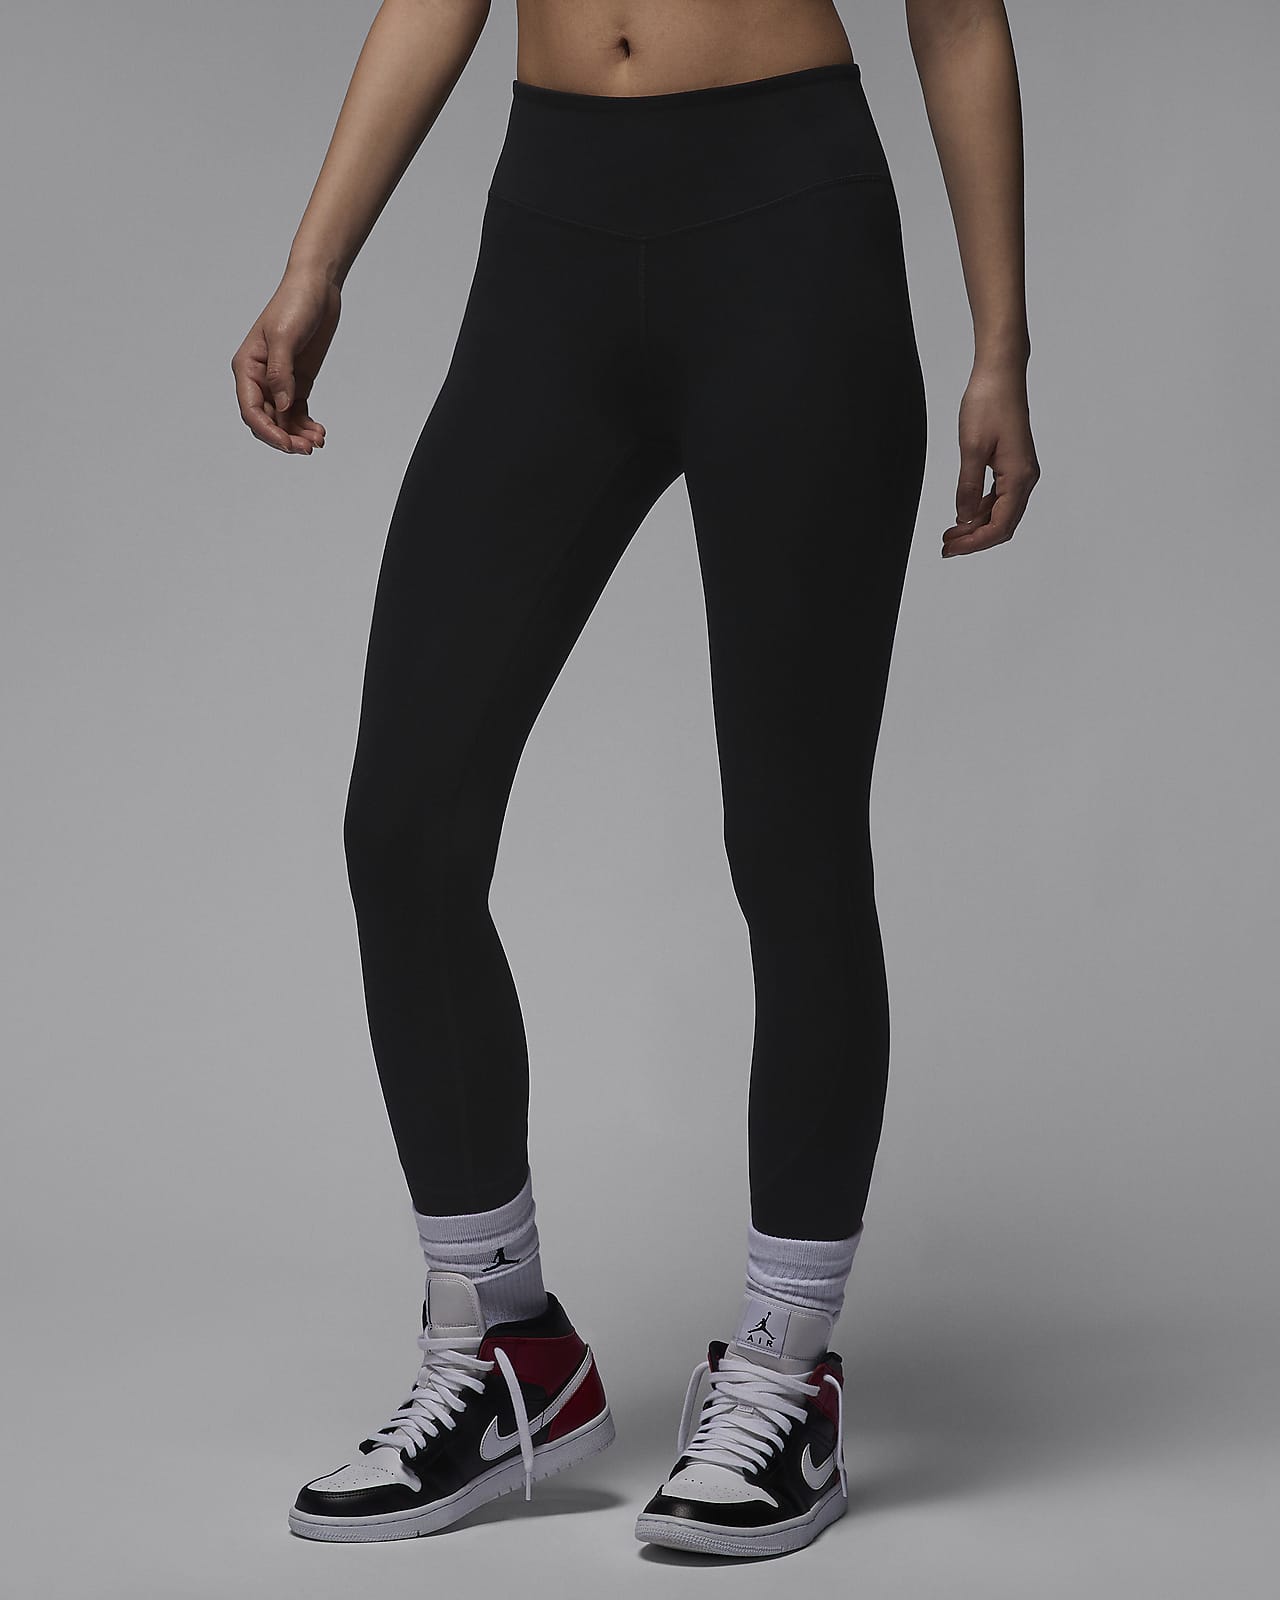 Jordan Women's Sport Leggings Black / Black - Off Noir